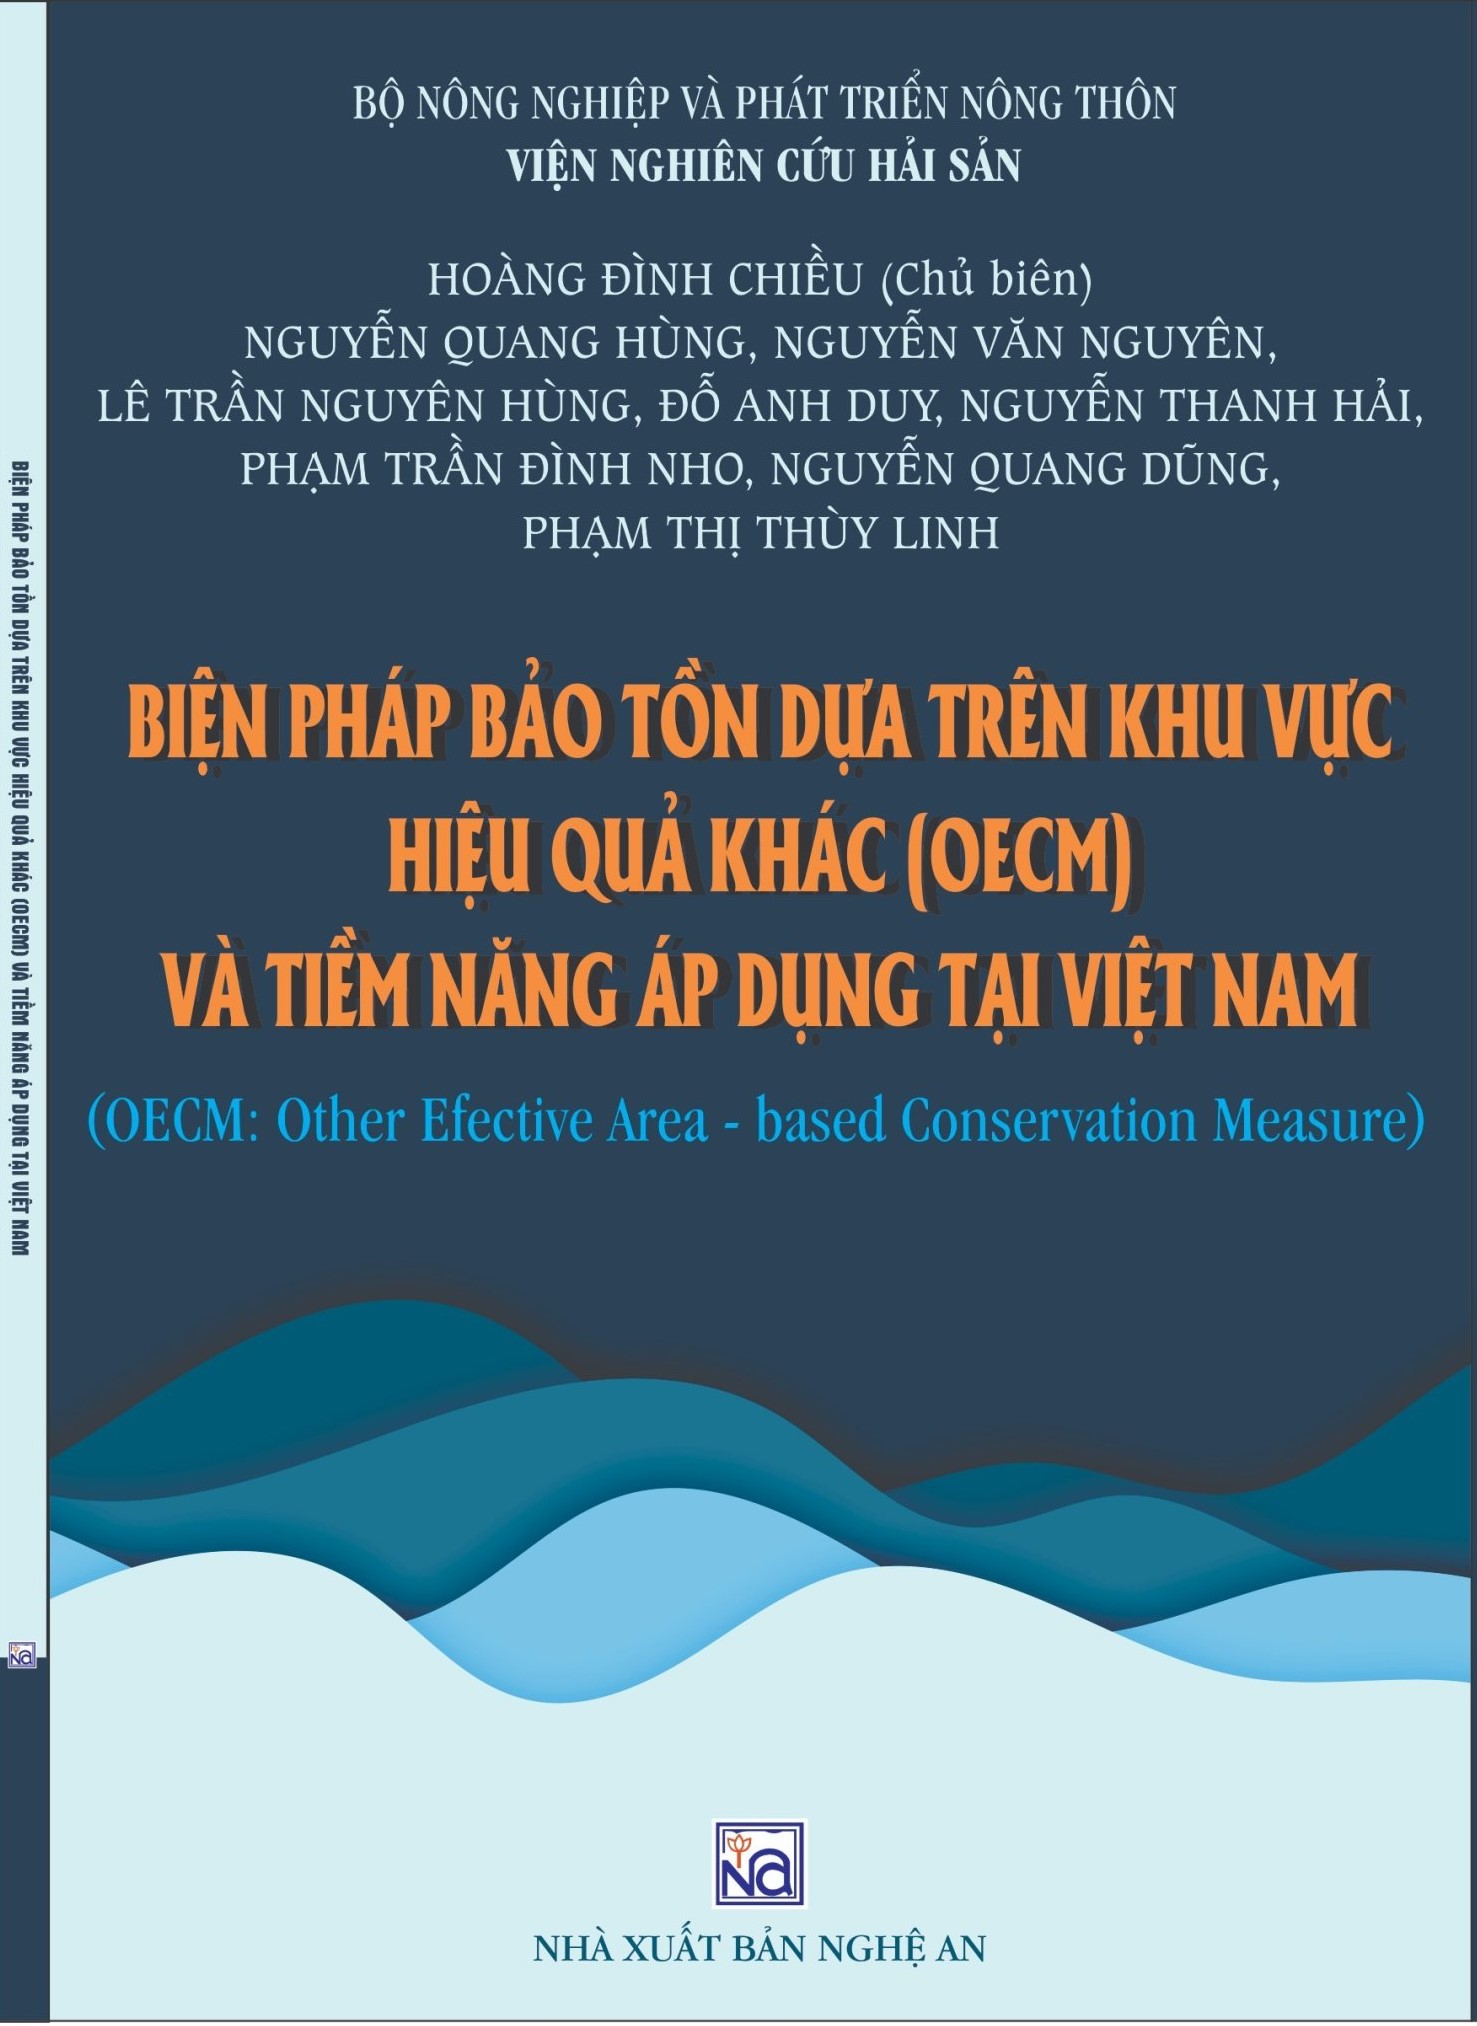 Biện pháp bảo tồn dựa trên khu vực hiệu quả khác (OECM) và tiềm năng áp dụng tại Việt Nam